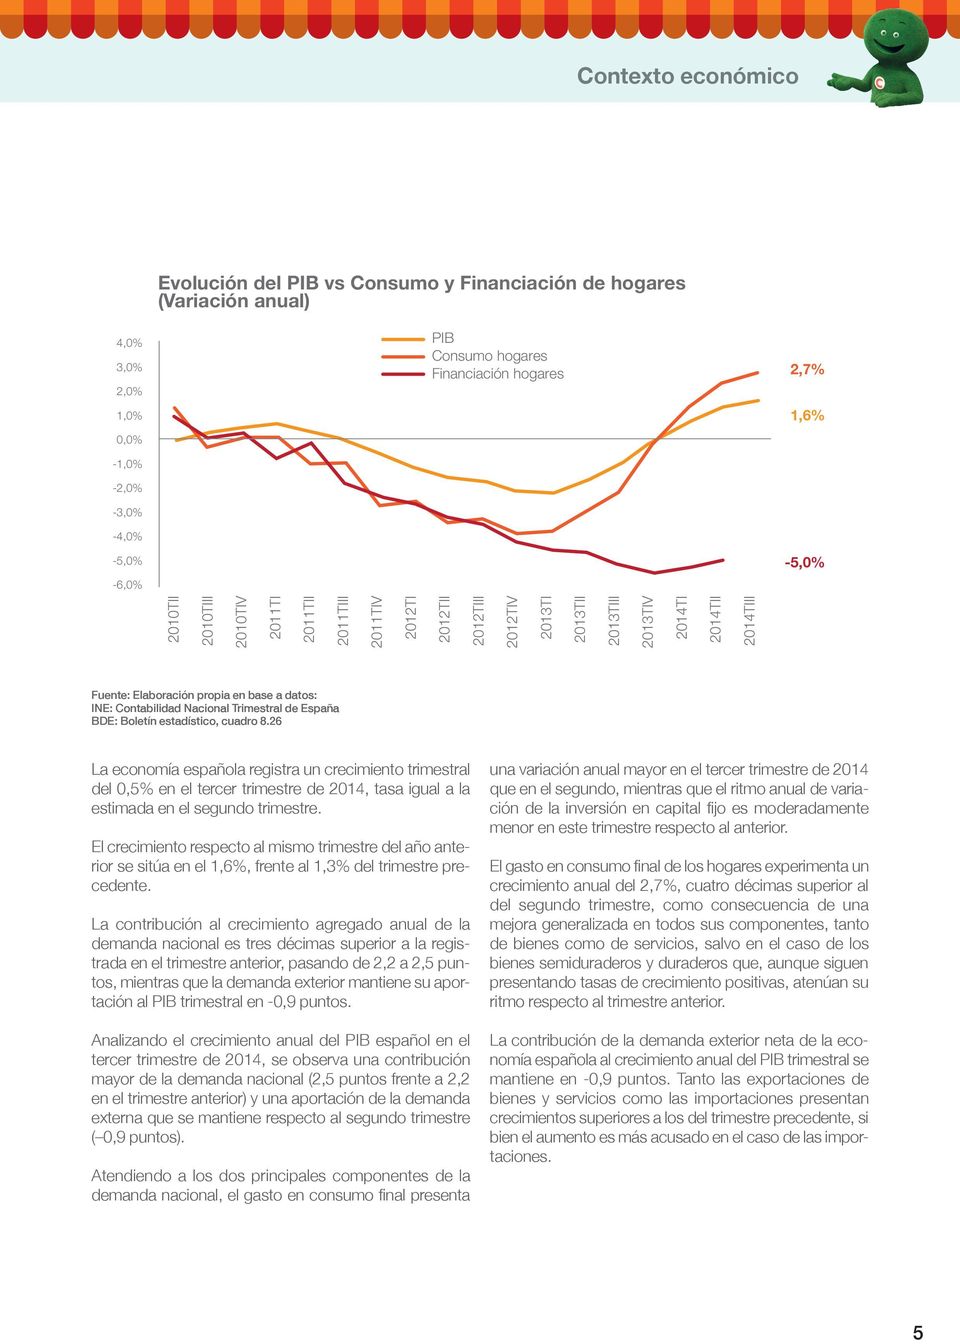 INE: Contabilidad Nacional Trimestral de España BDE: Boletín estadístico, cuadro 8.